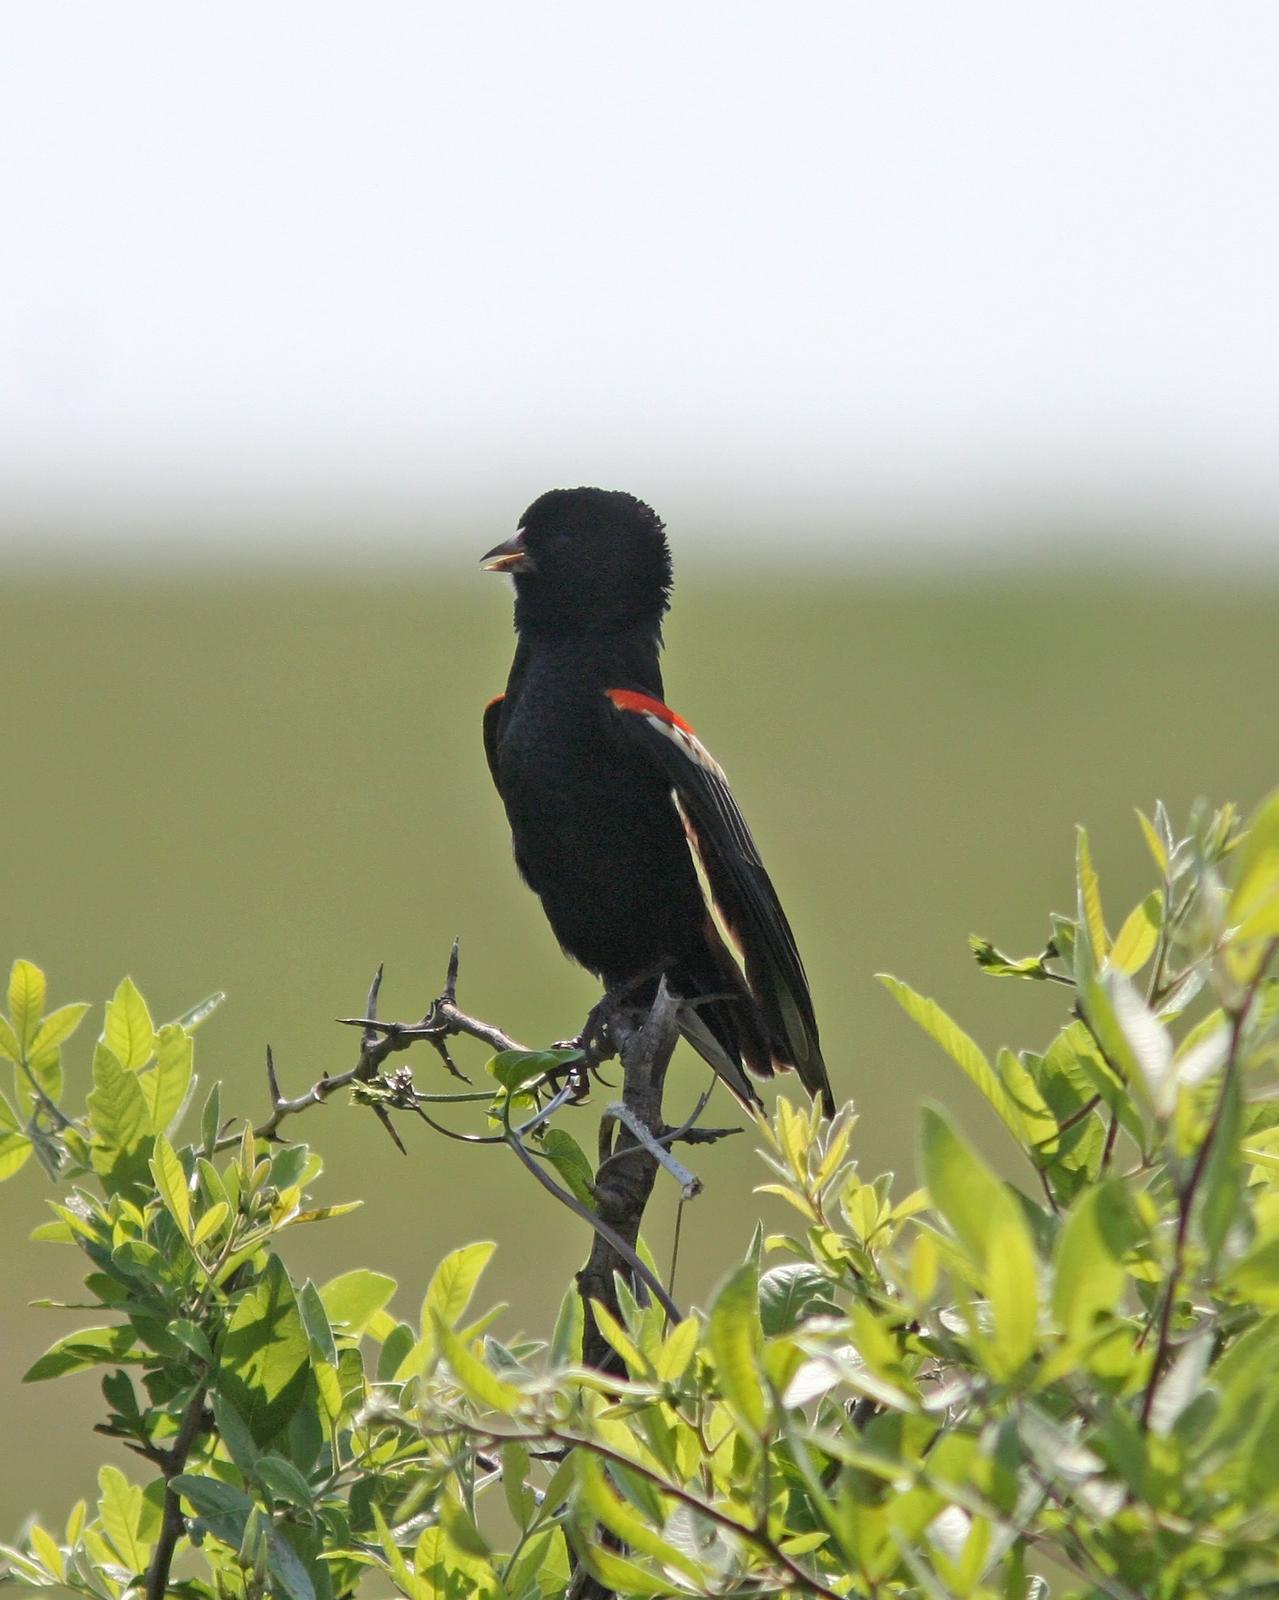 Fan-tailed Widowbird Photo by Henk Baptist